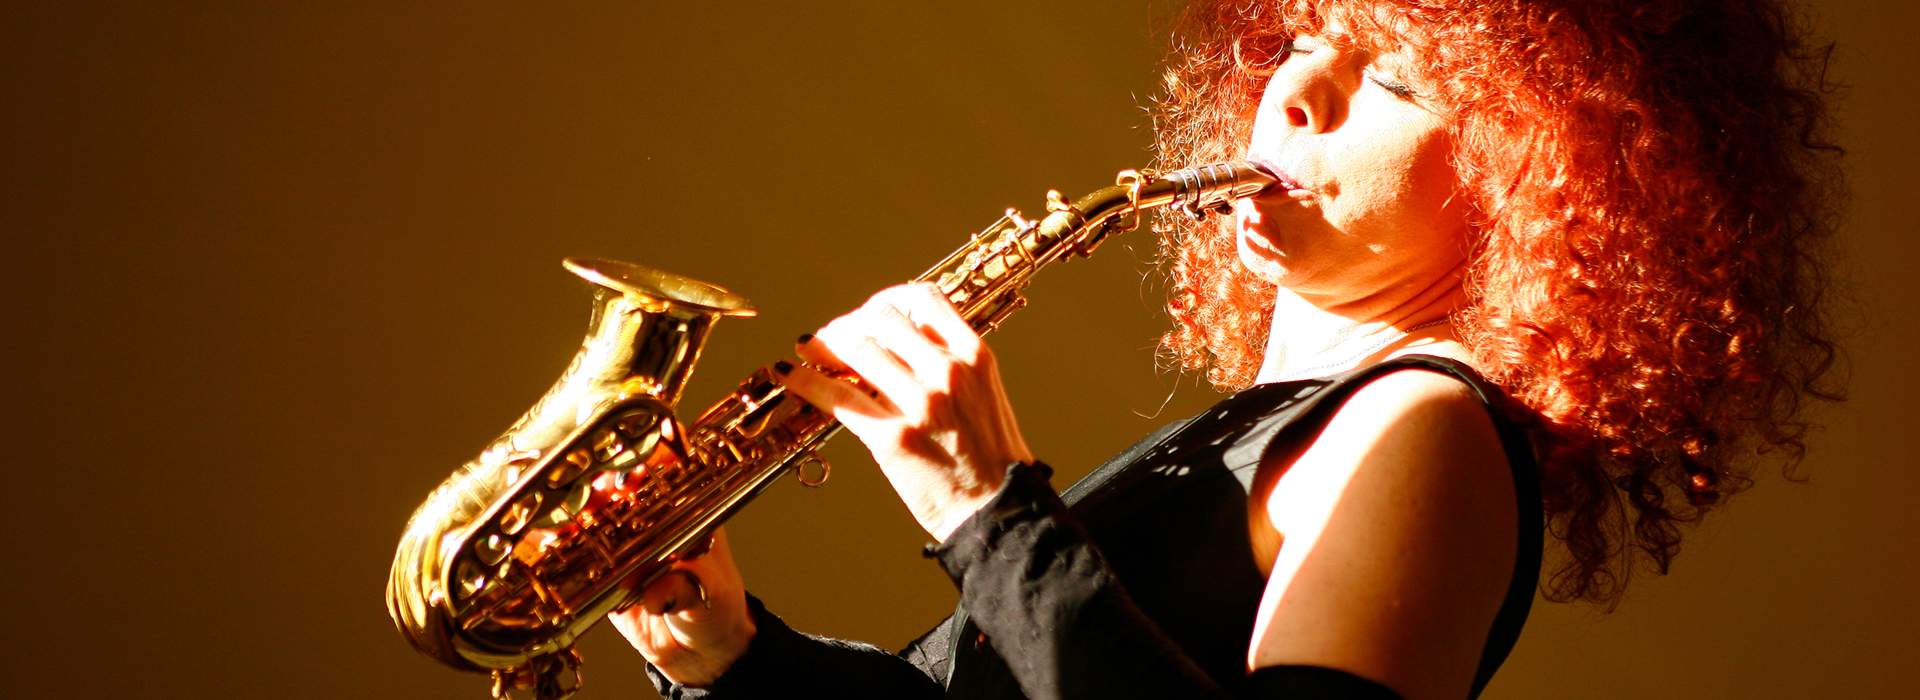 Tina Tandler am Saxophon